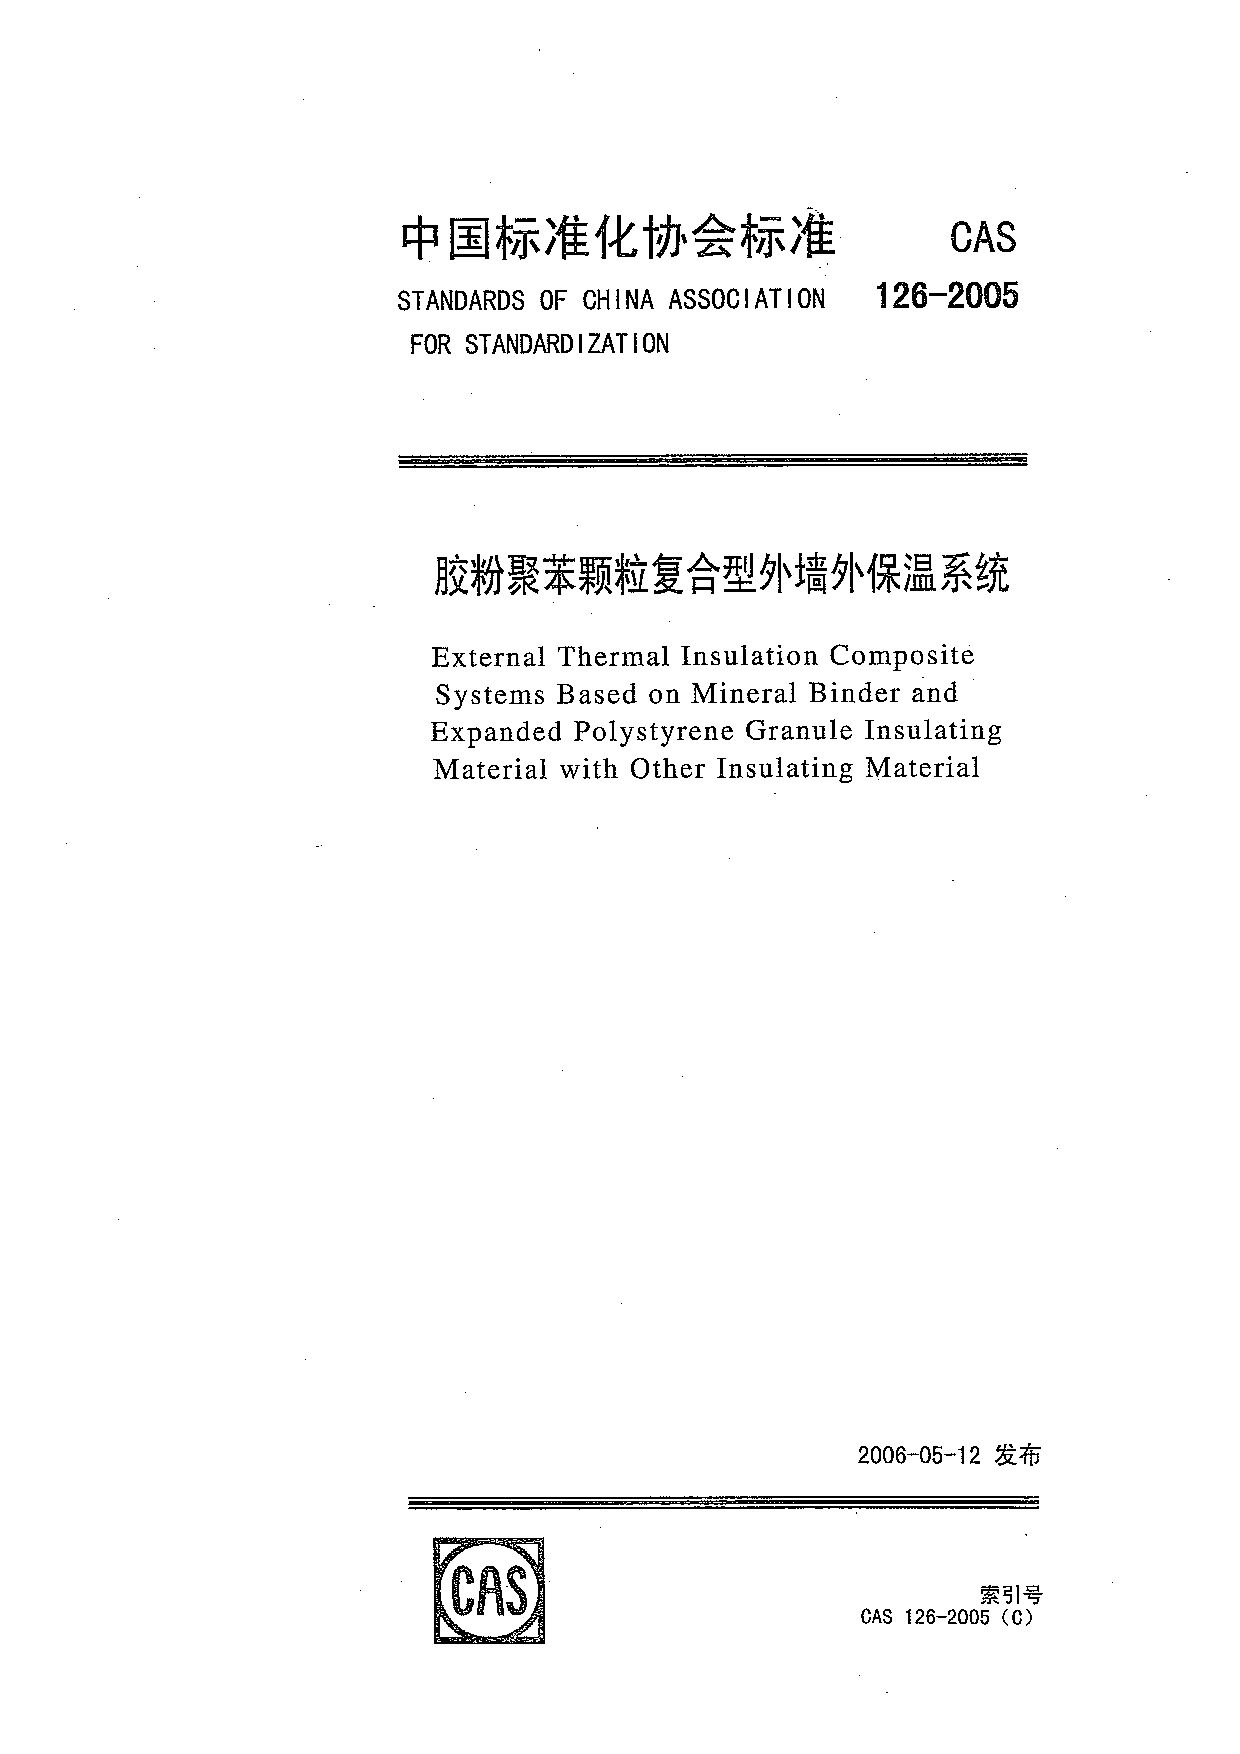 CAS 126-2005封面图